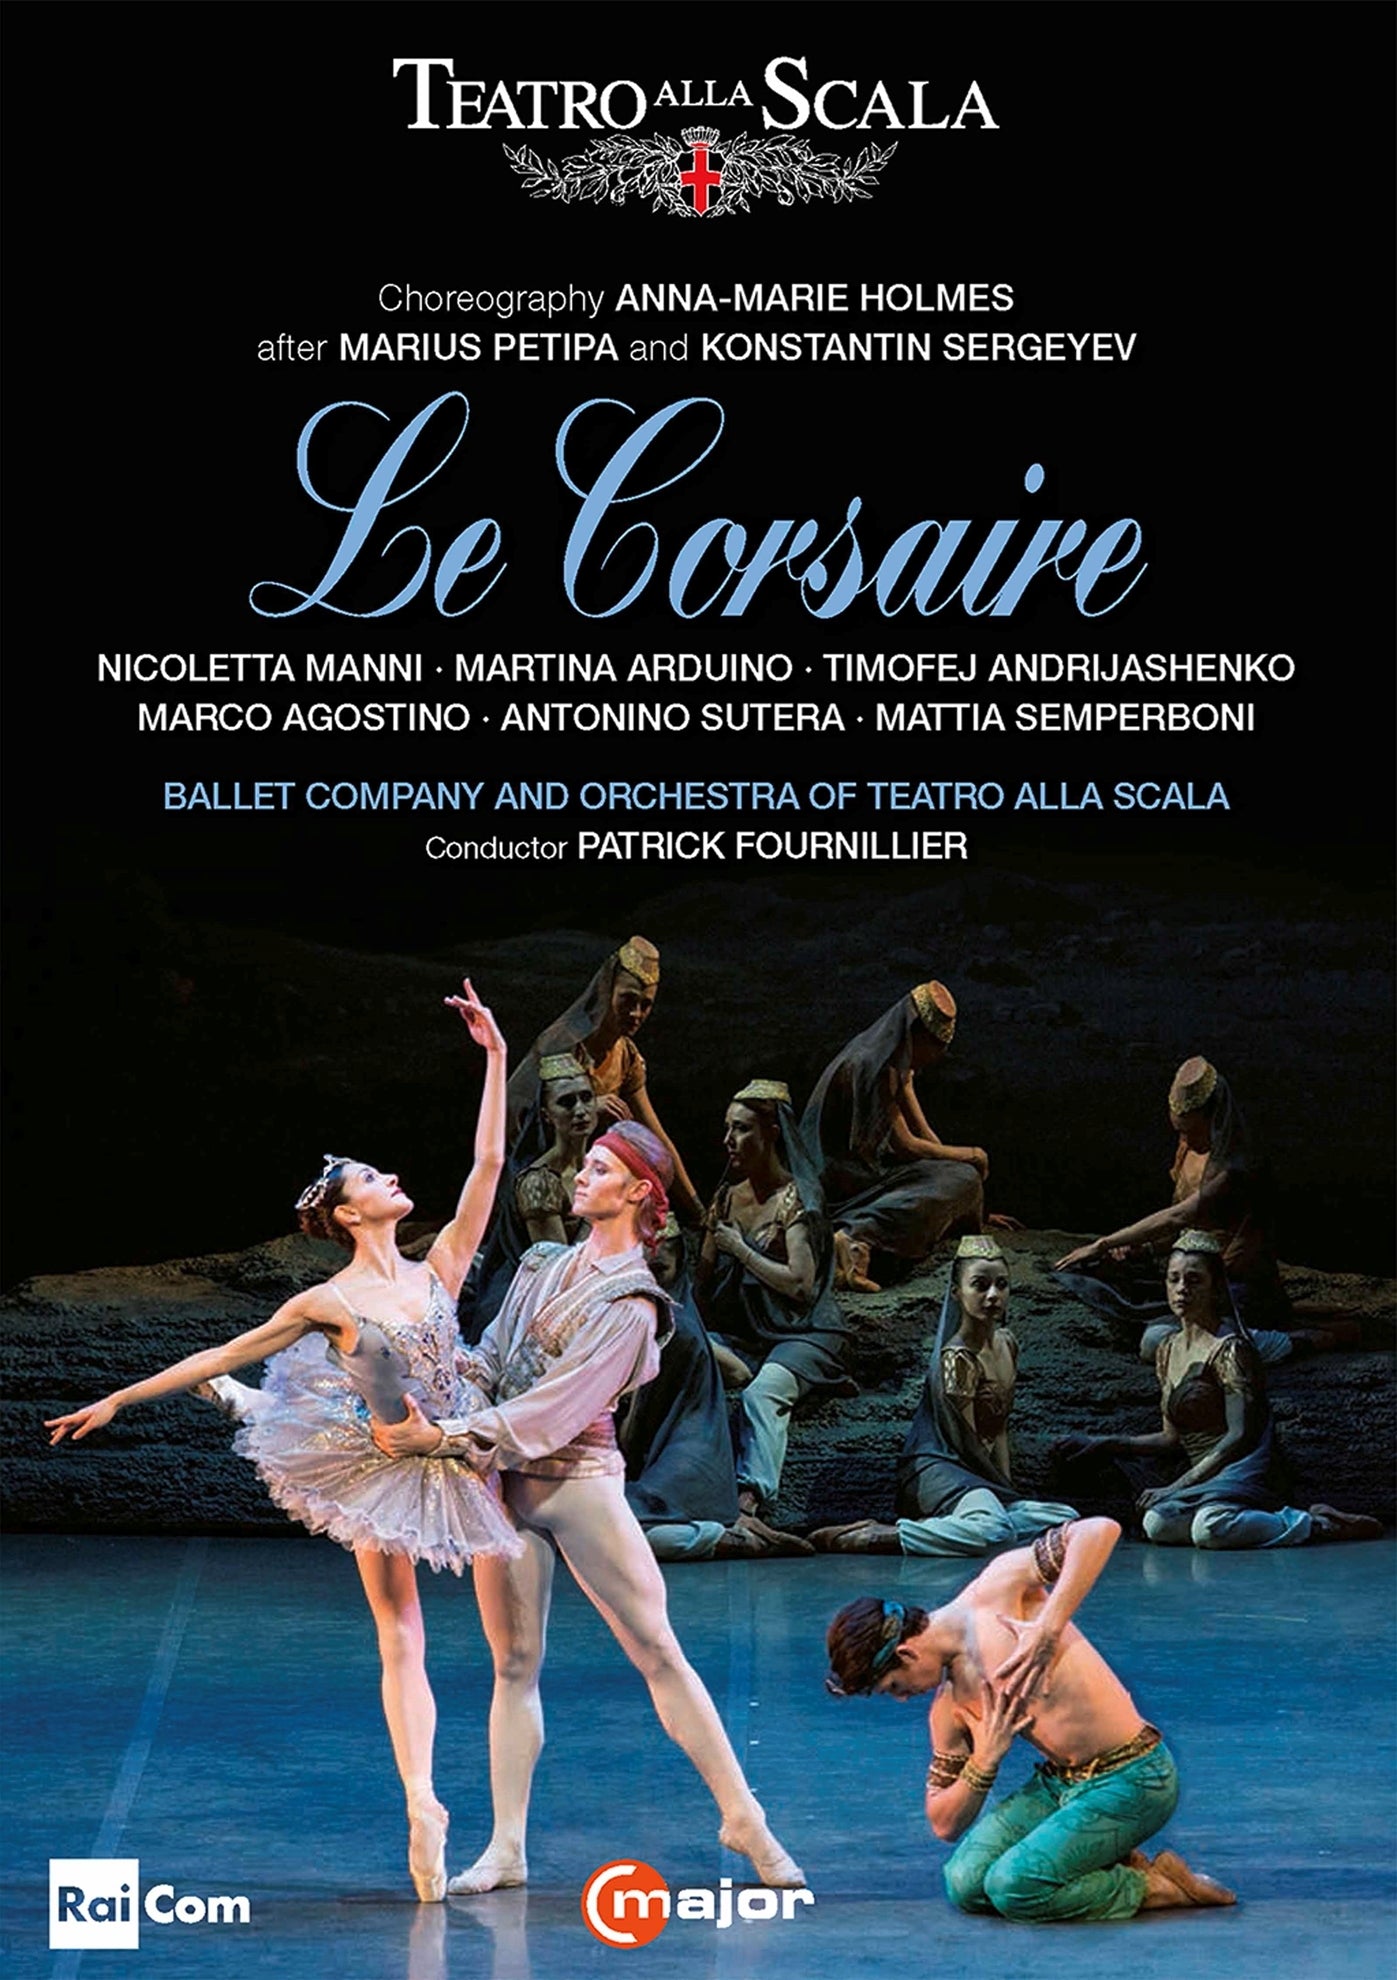 Le Corsaire / Fournillier, Ballet Company & Orchestra of Teatro Alla Scala